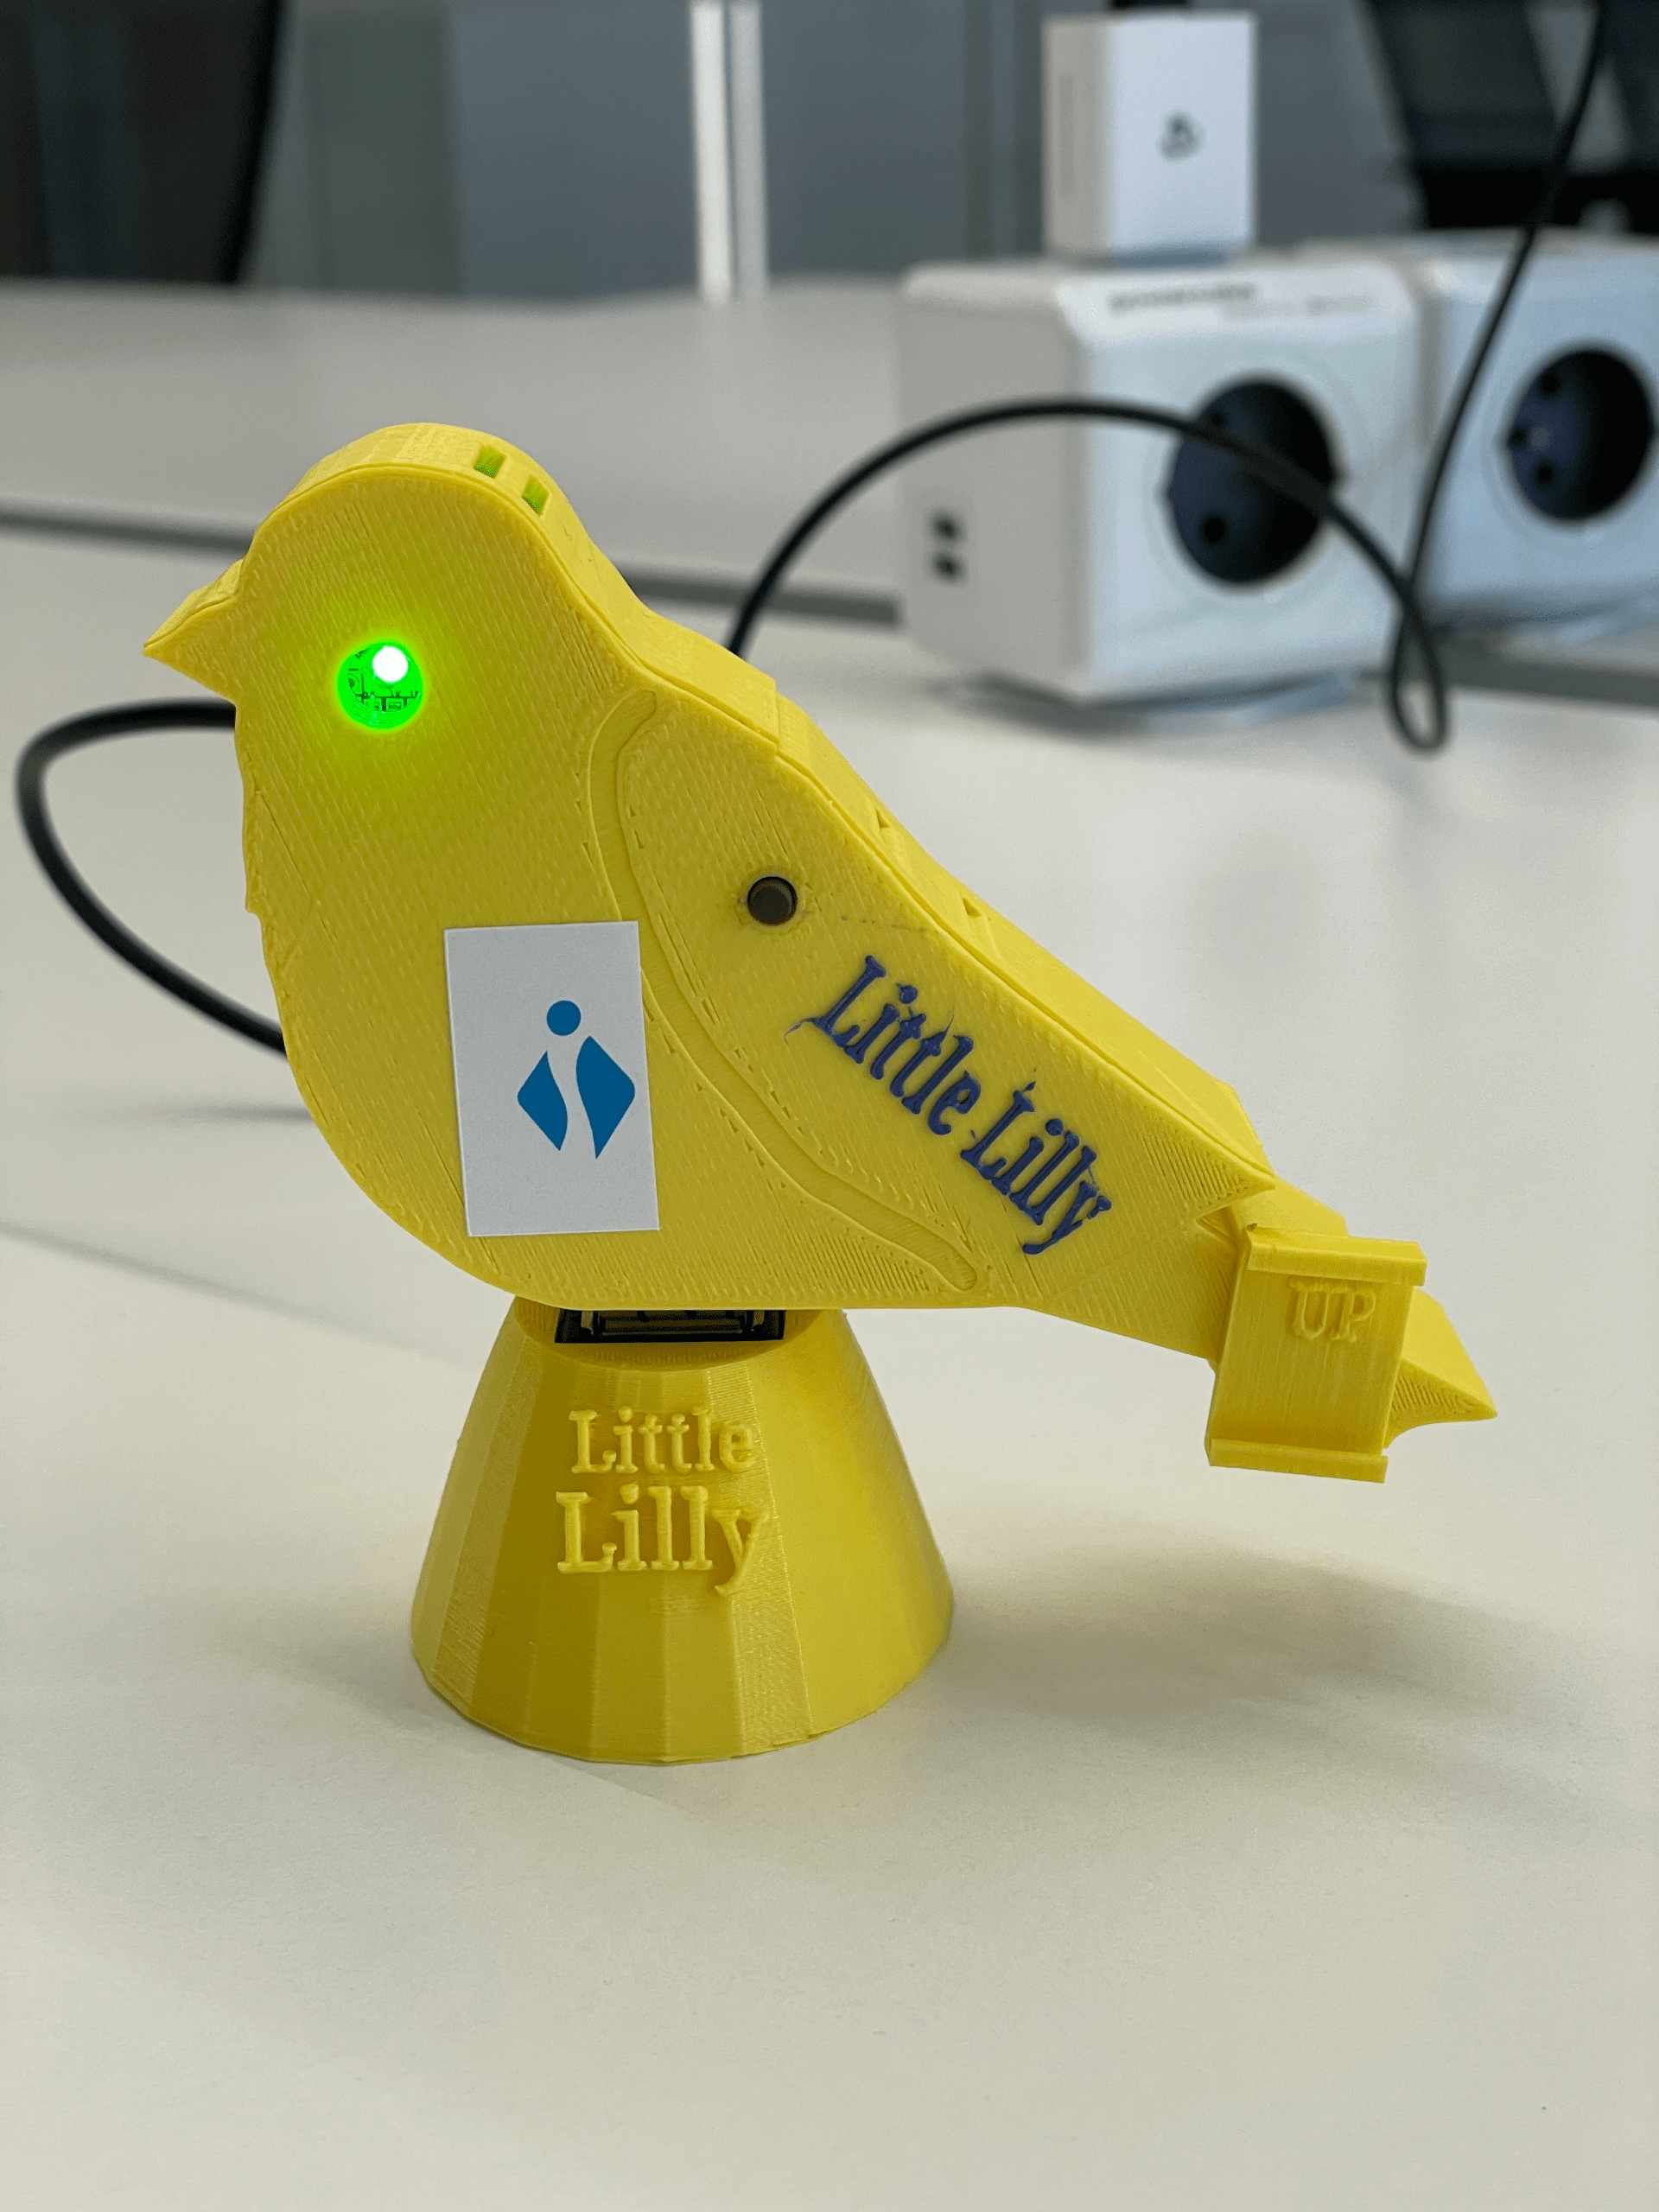 Foto van een 'Little Lilly': een geel toestelletje in de vorm van een kanarievogel met een groene of rode LED om de luchtkwaliteit rond het toestel aan te geven